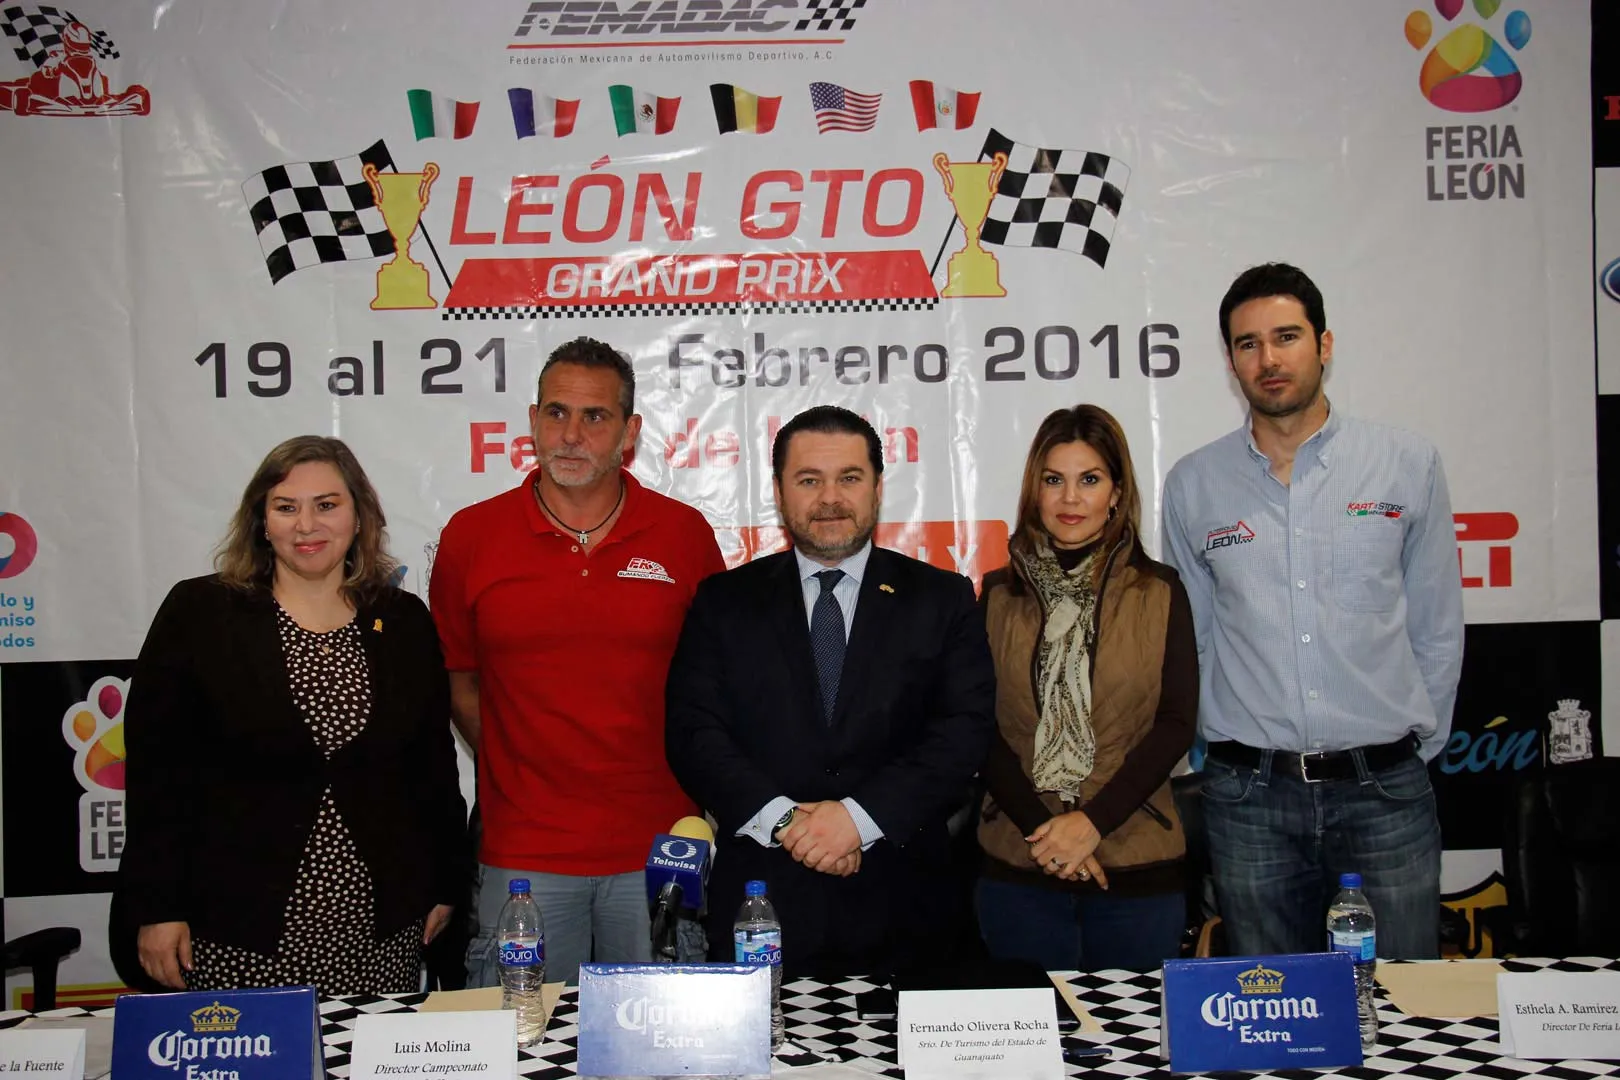 Nota sobre Anuncian el León Gto Grand Prix